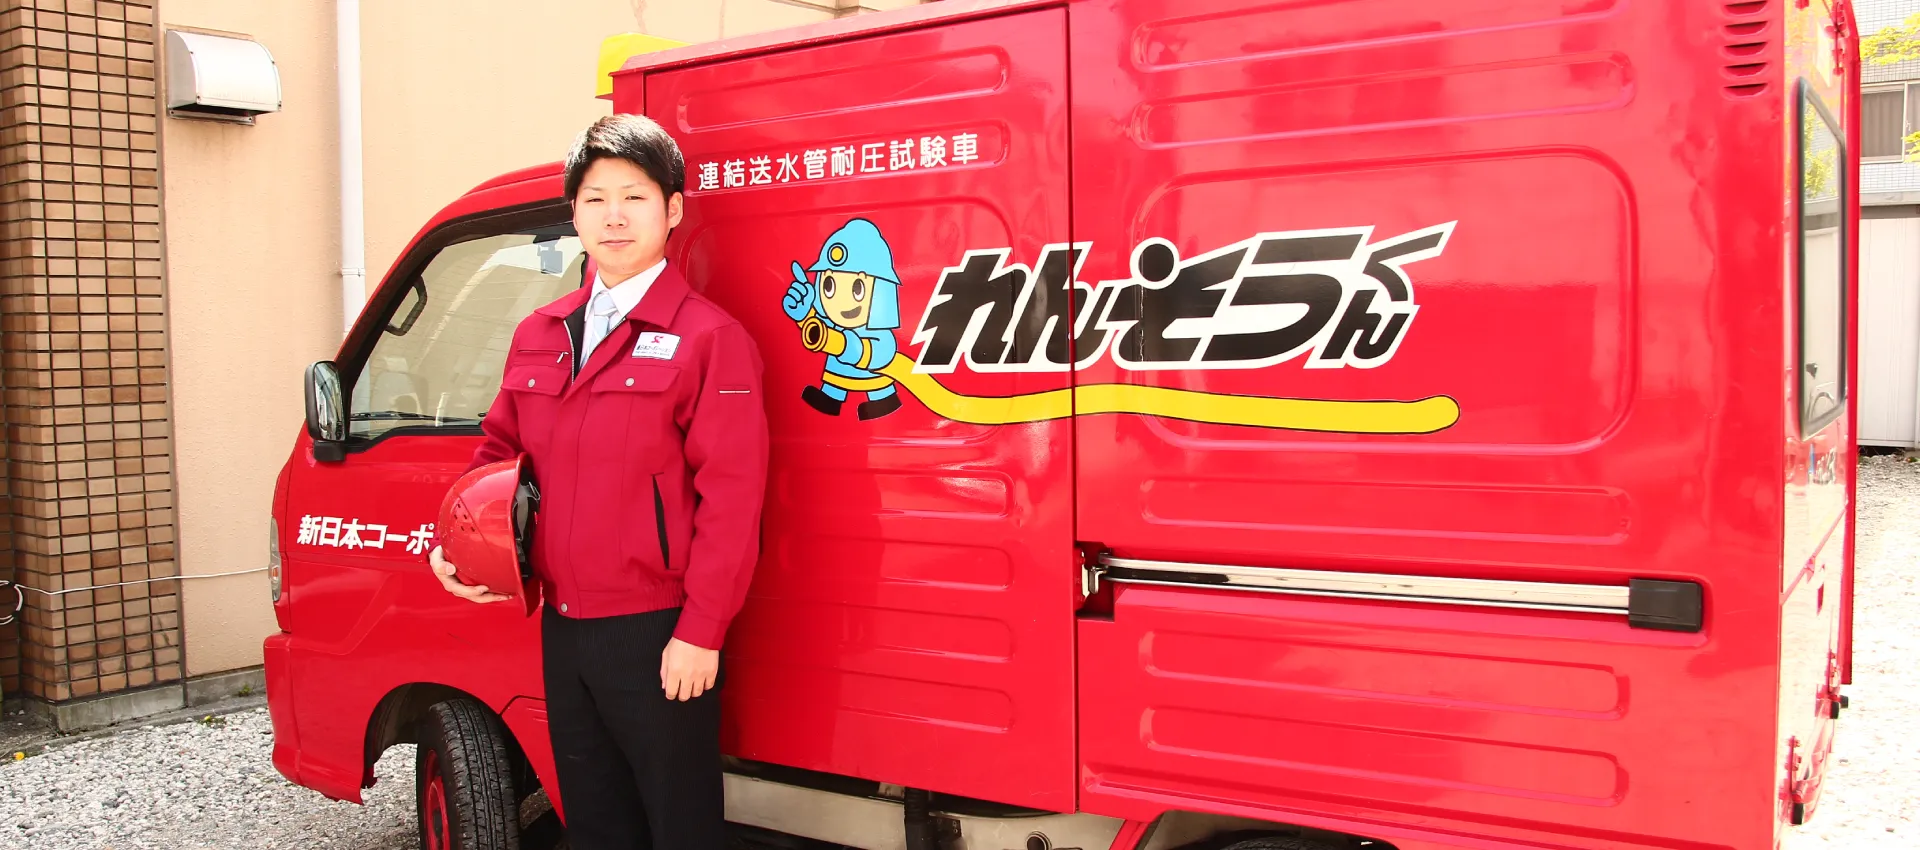 連結送水管耐圧試験専用車を背景に、赤いヘルメットを抱えている男性の写真